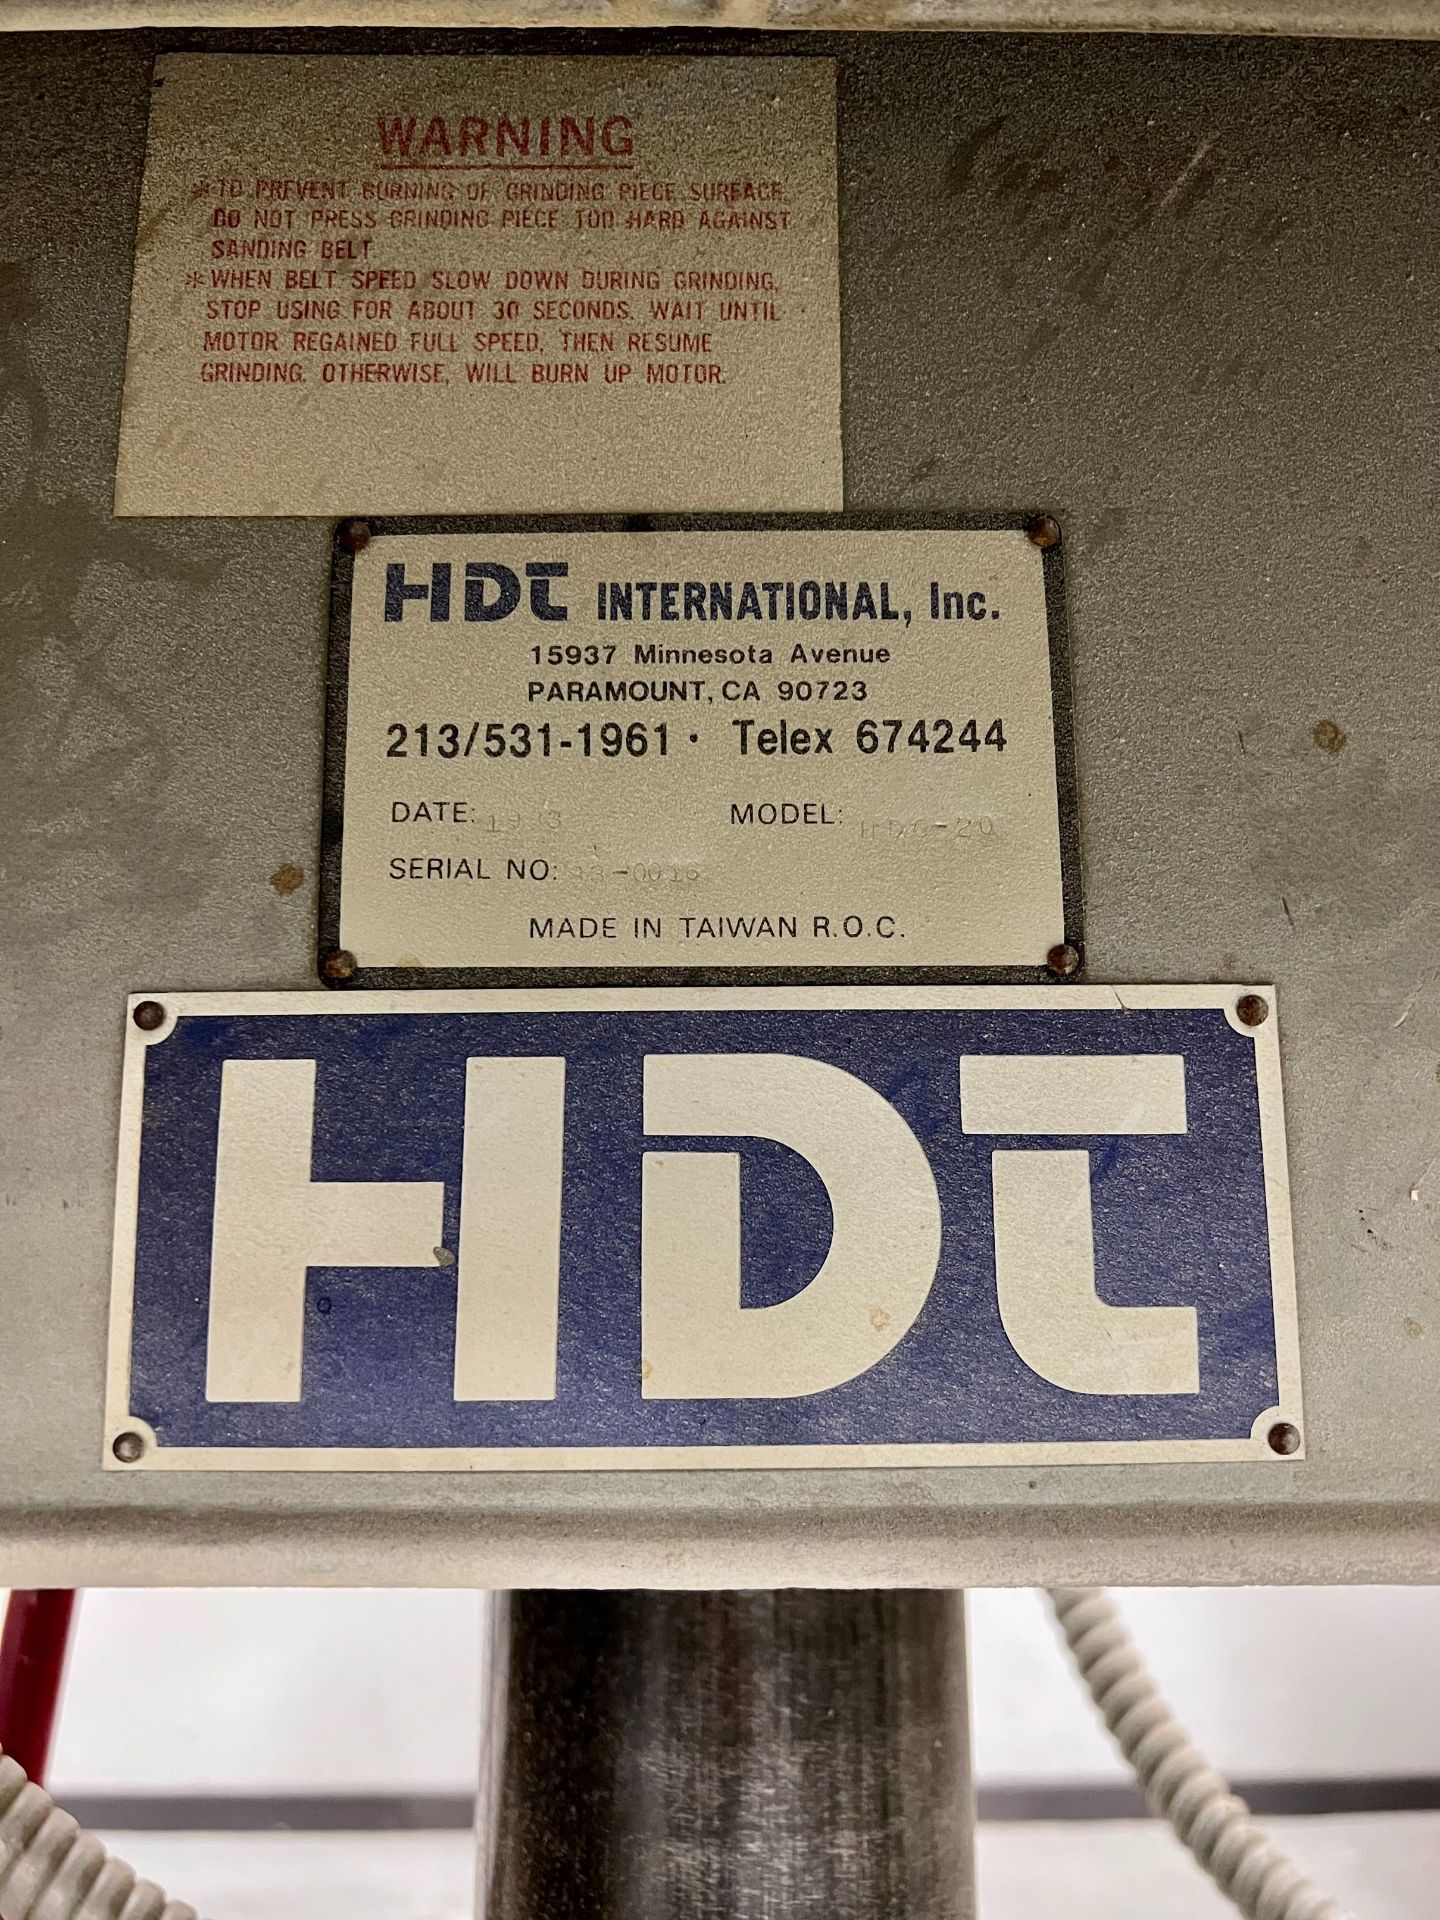 HDT 20" DISC SANDER - Image 2 of 2